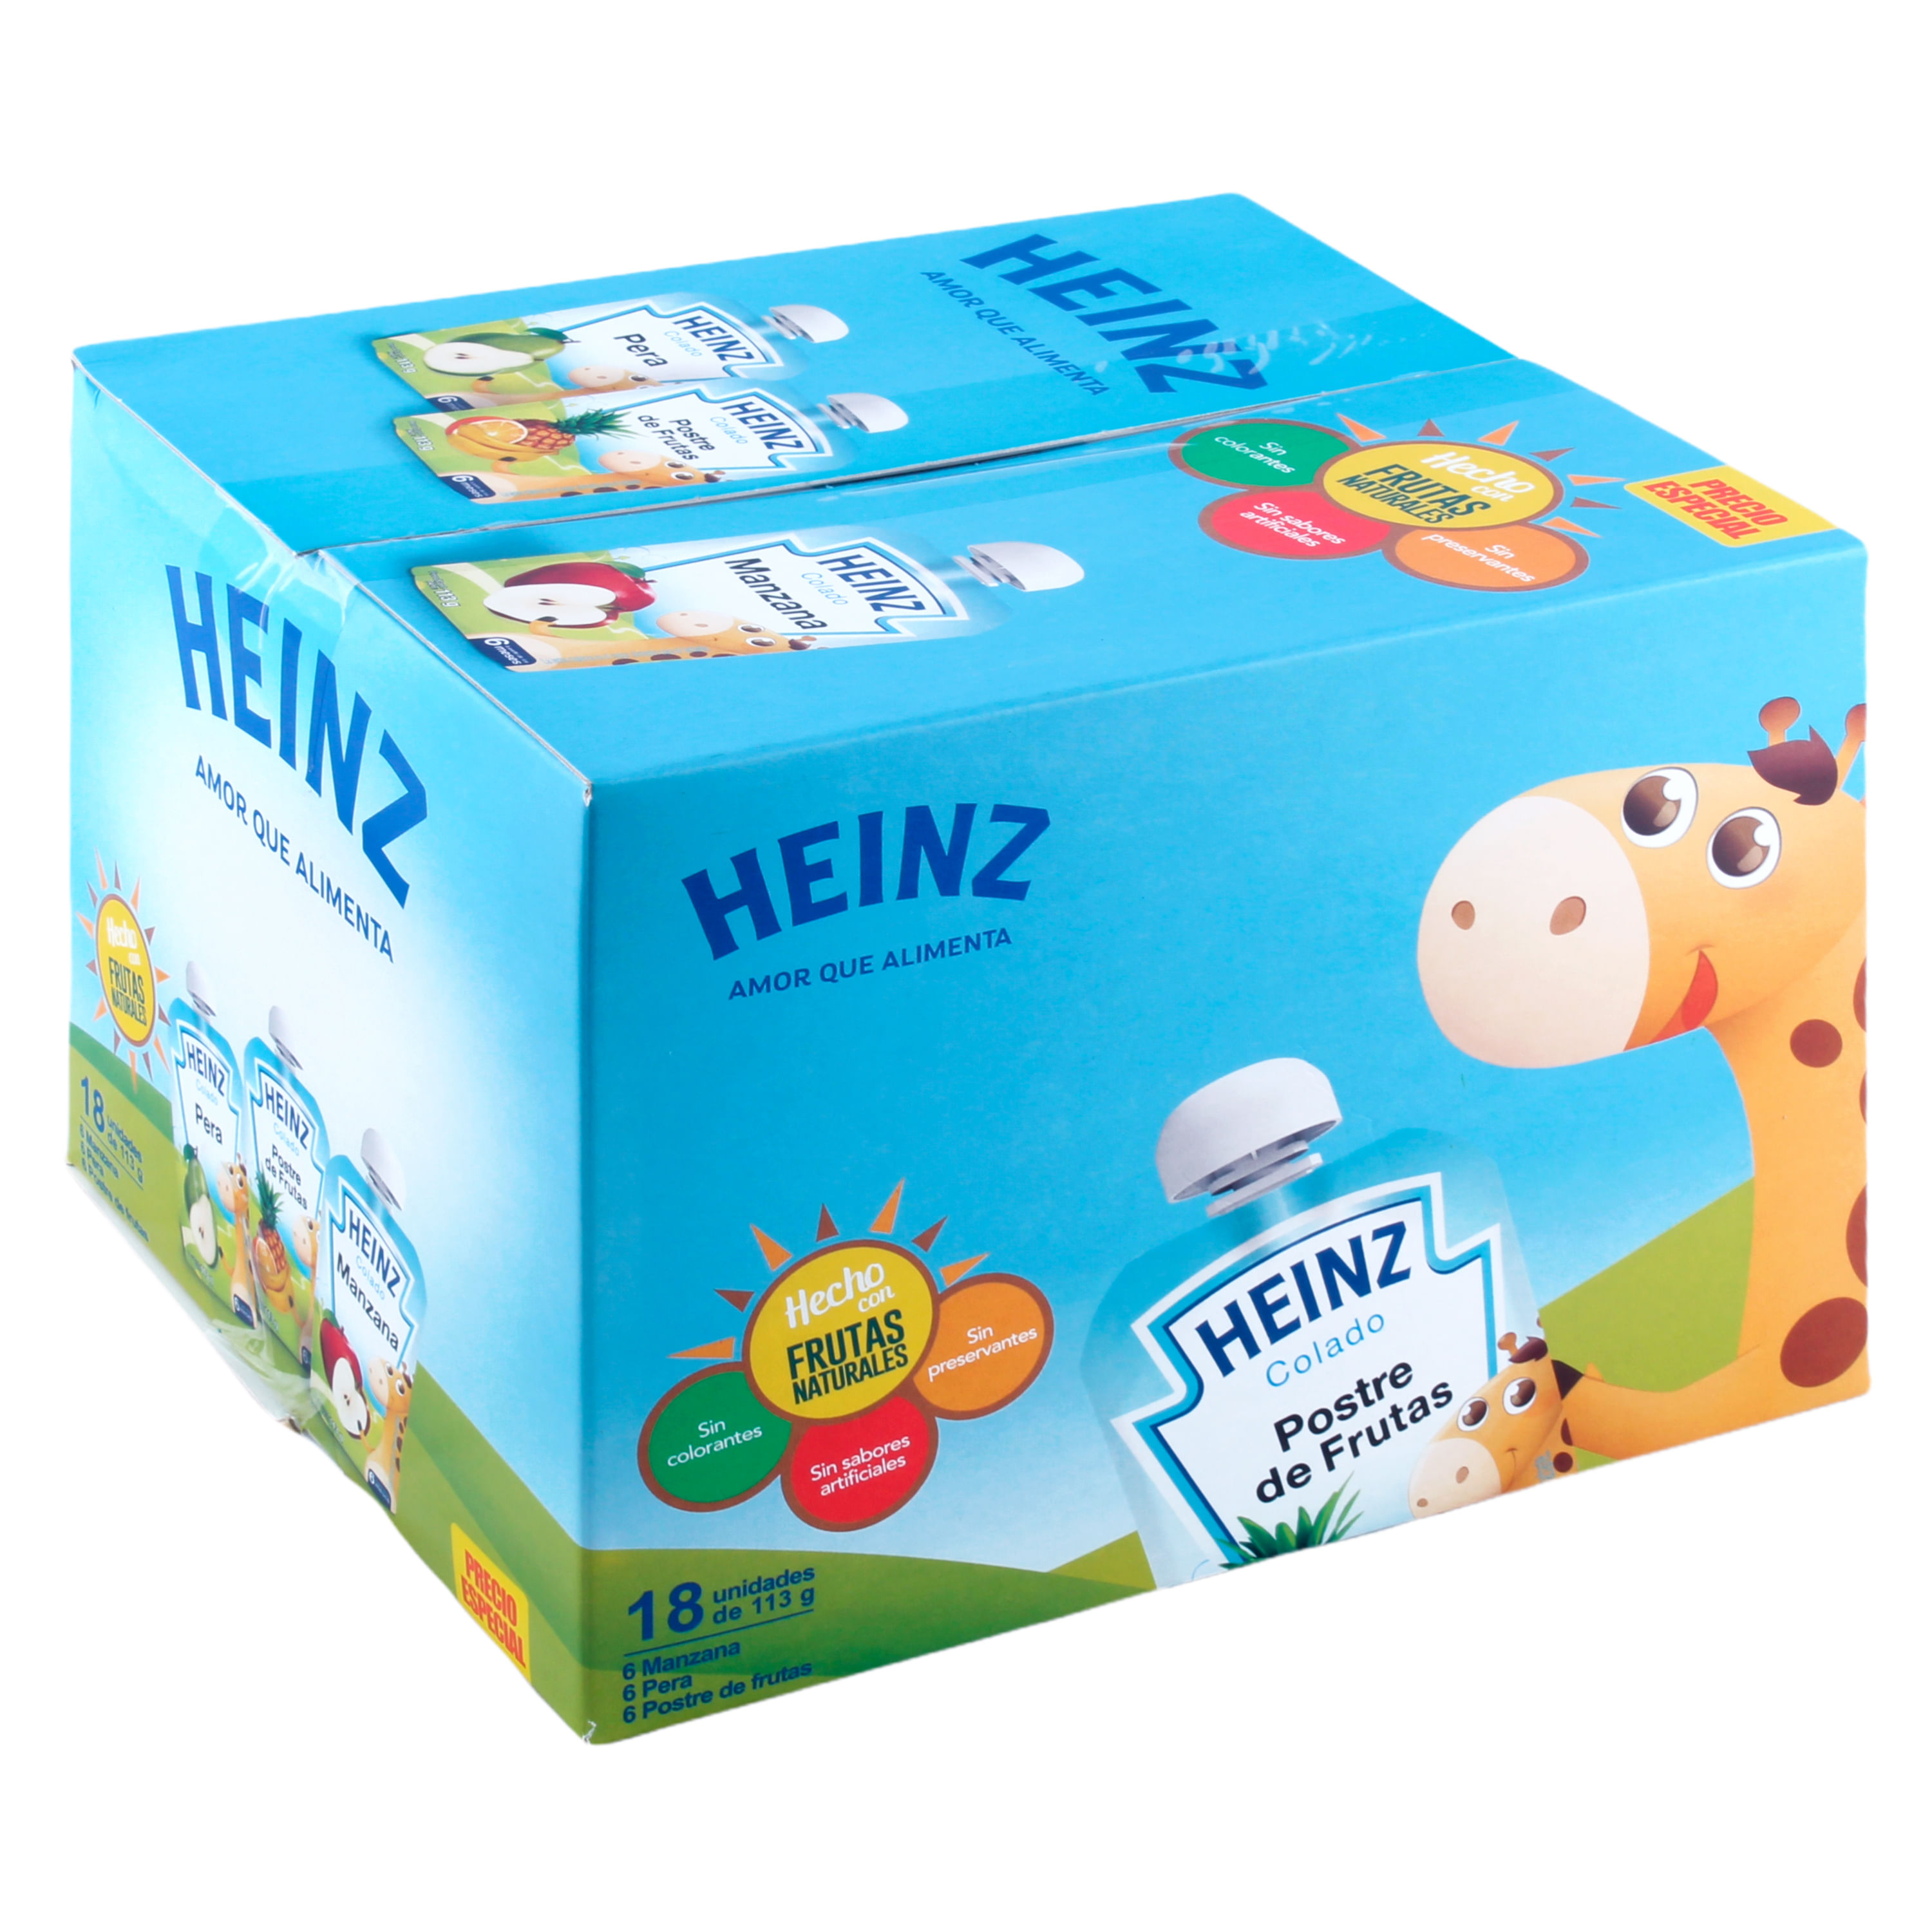 18-Pack-Colado-Surtido-Heinz-Caja-2034gr-1-30221